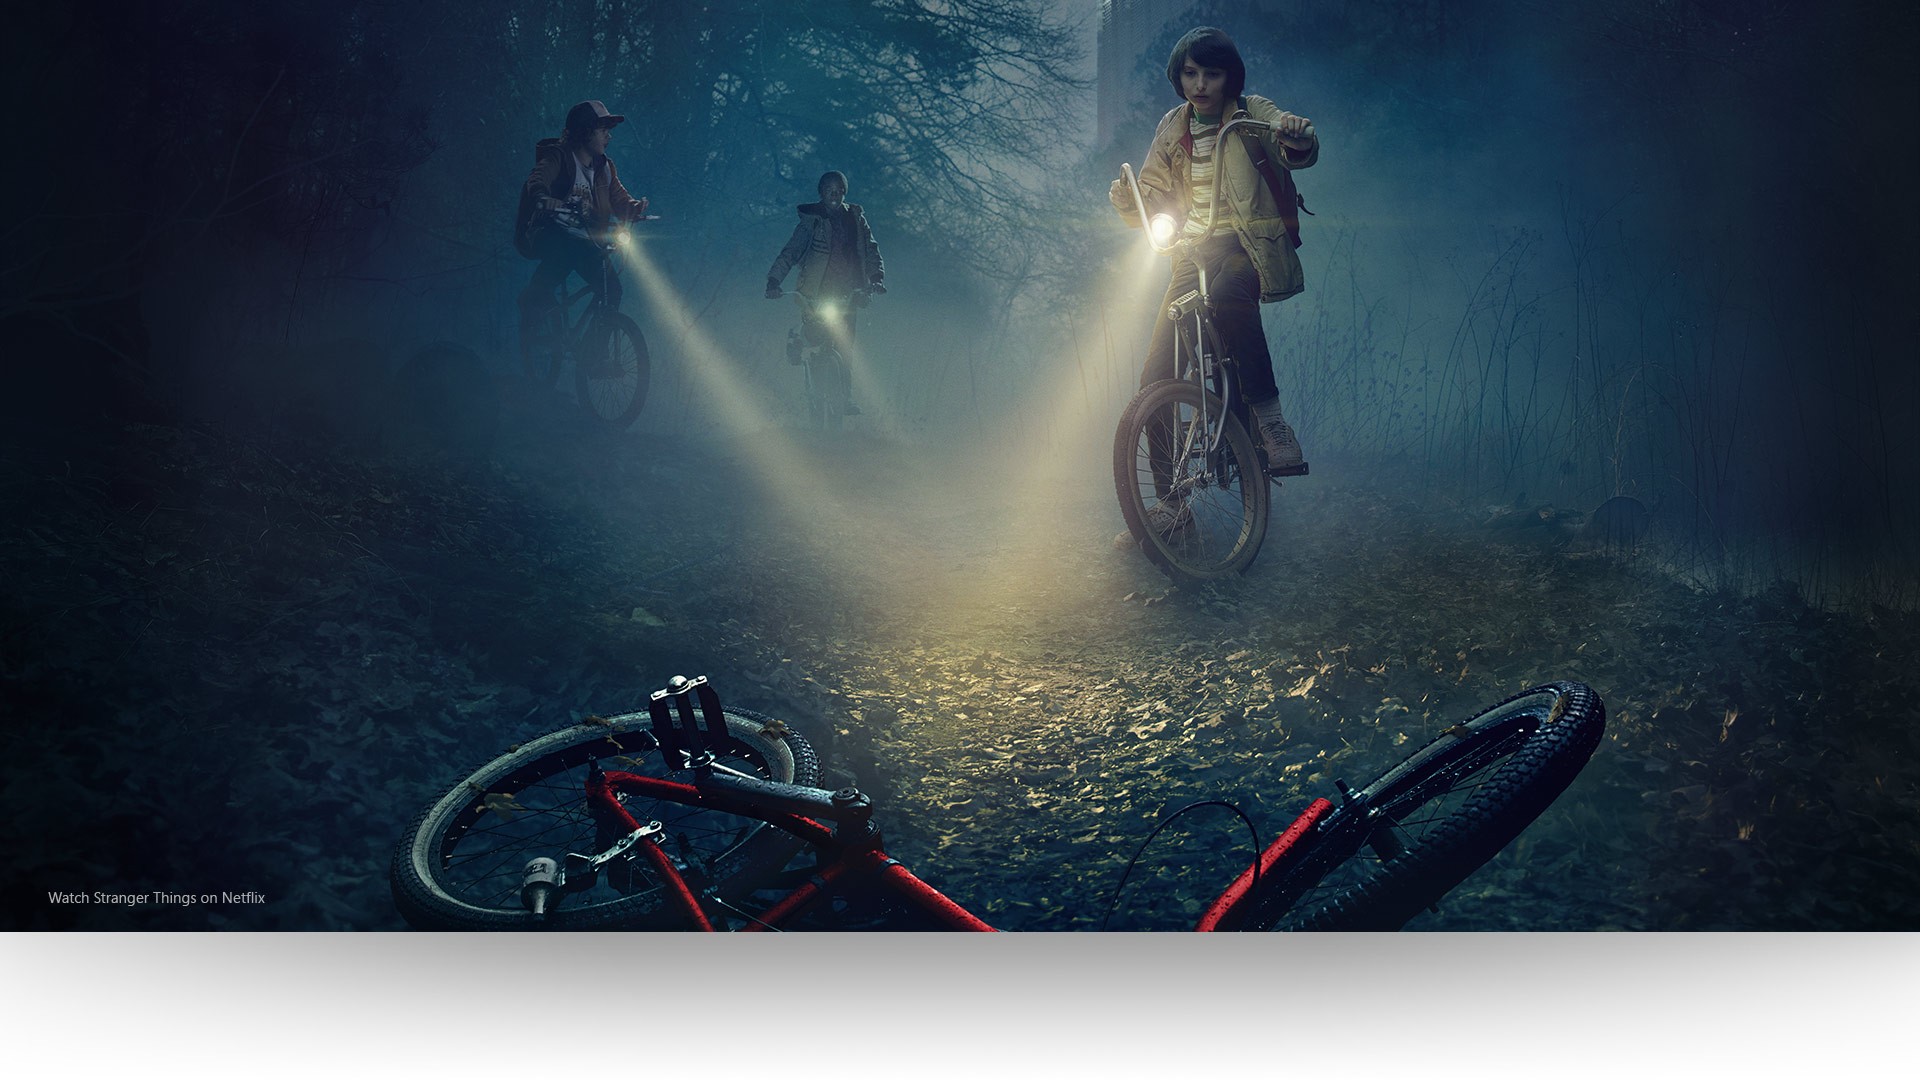 Stranger Things - Dustin, Lucas ve Mike; ışıklarını kasvetli bir orman yolunda terk edilmiş bir bisiklete tutuyor. Netflix'te Strangers Things'i izleyin.